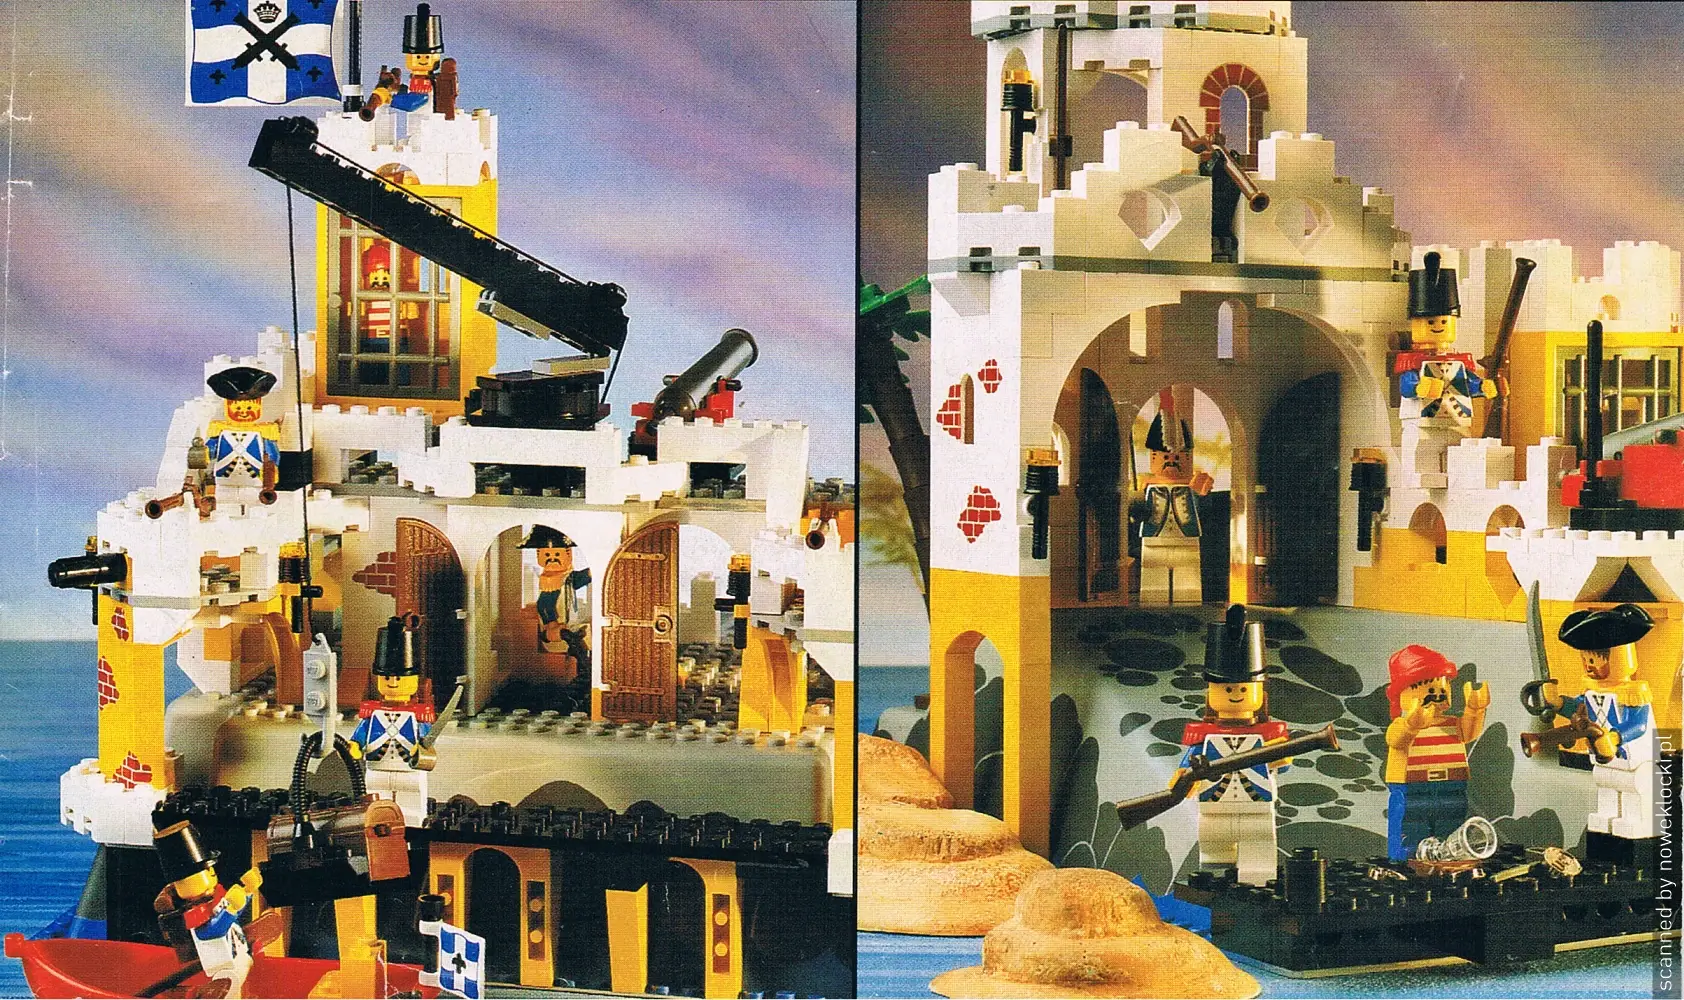 Zdjęcie fortu 6276 z serii LEGO® Piraci i alternatywnej budowy